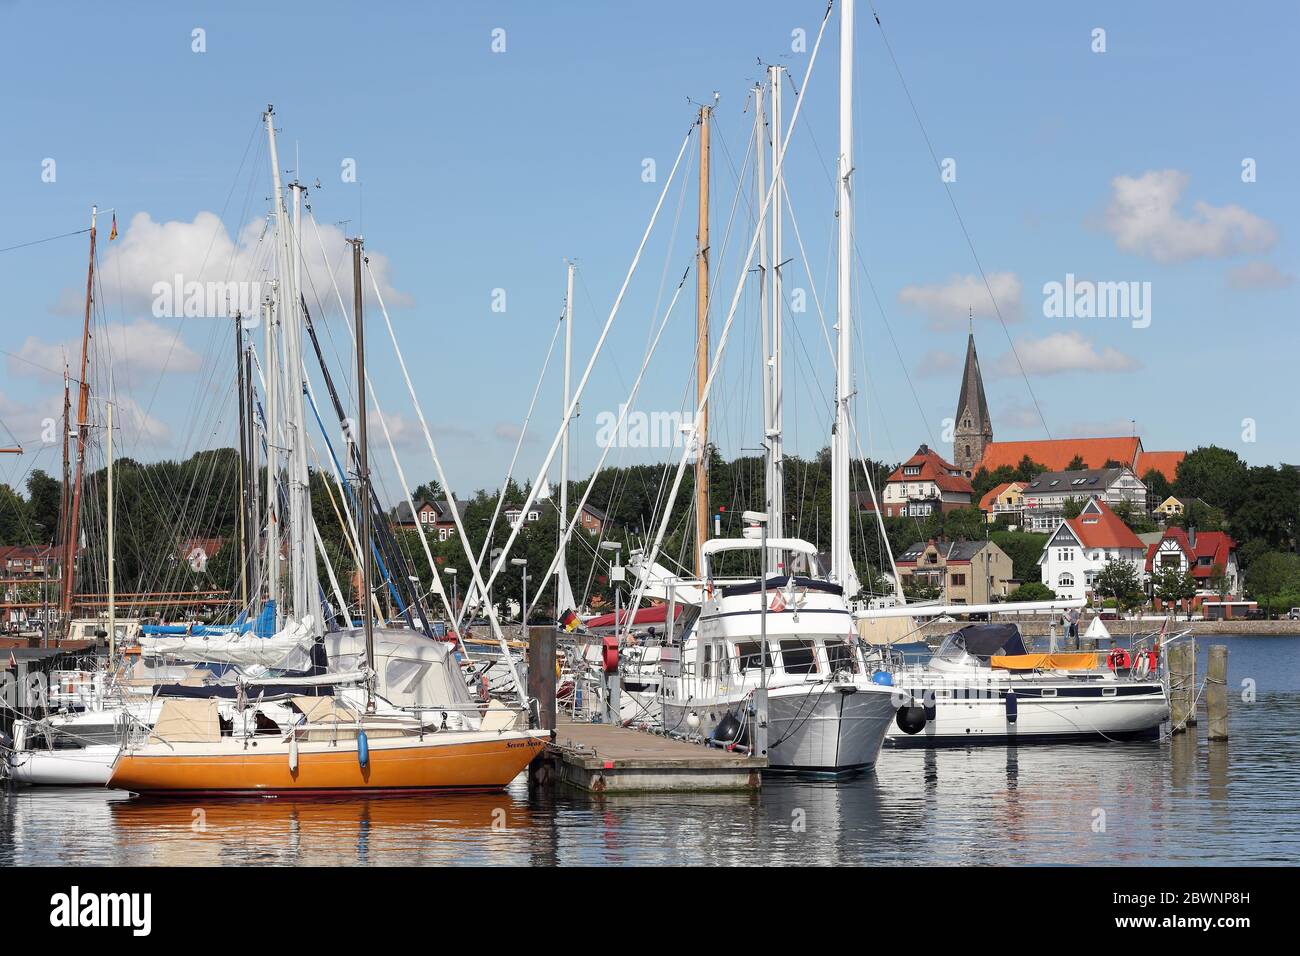 El puerto deportivo de Eckernförde y la iglesia románica de Borby Foto de stock